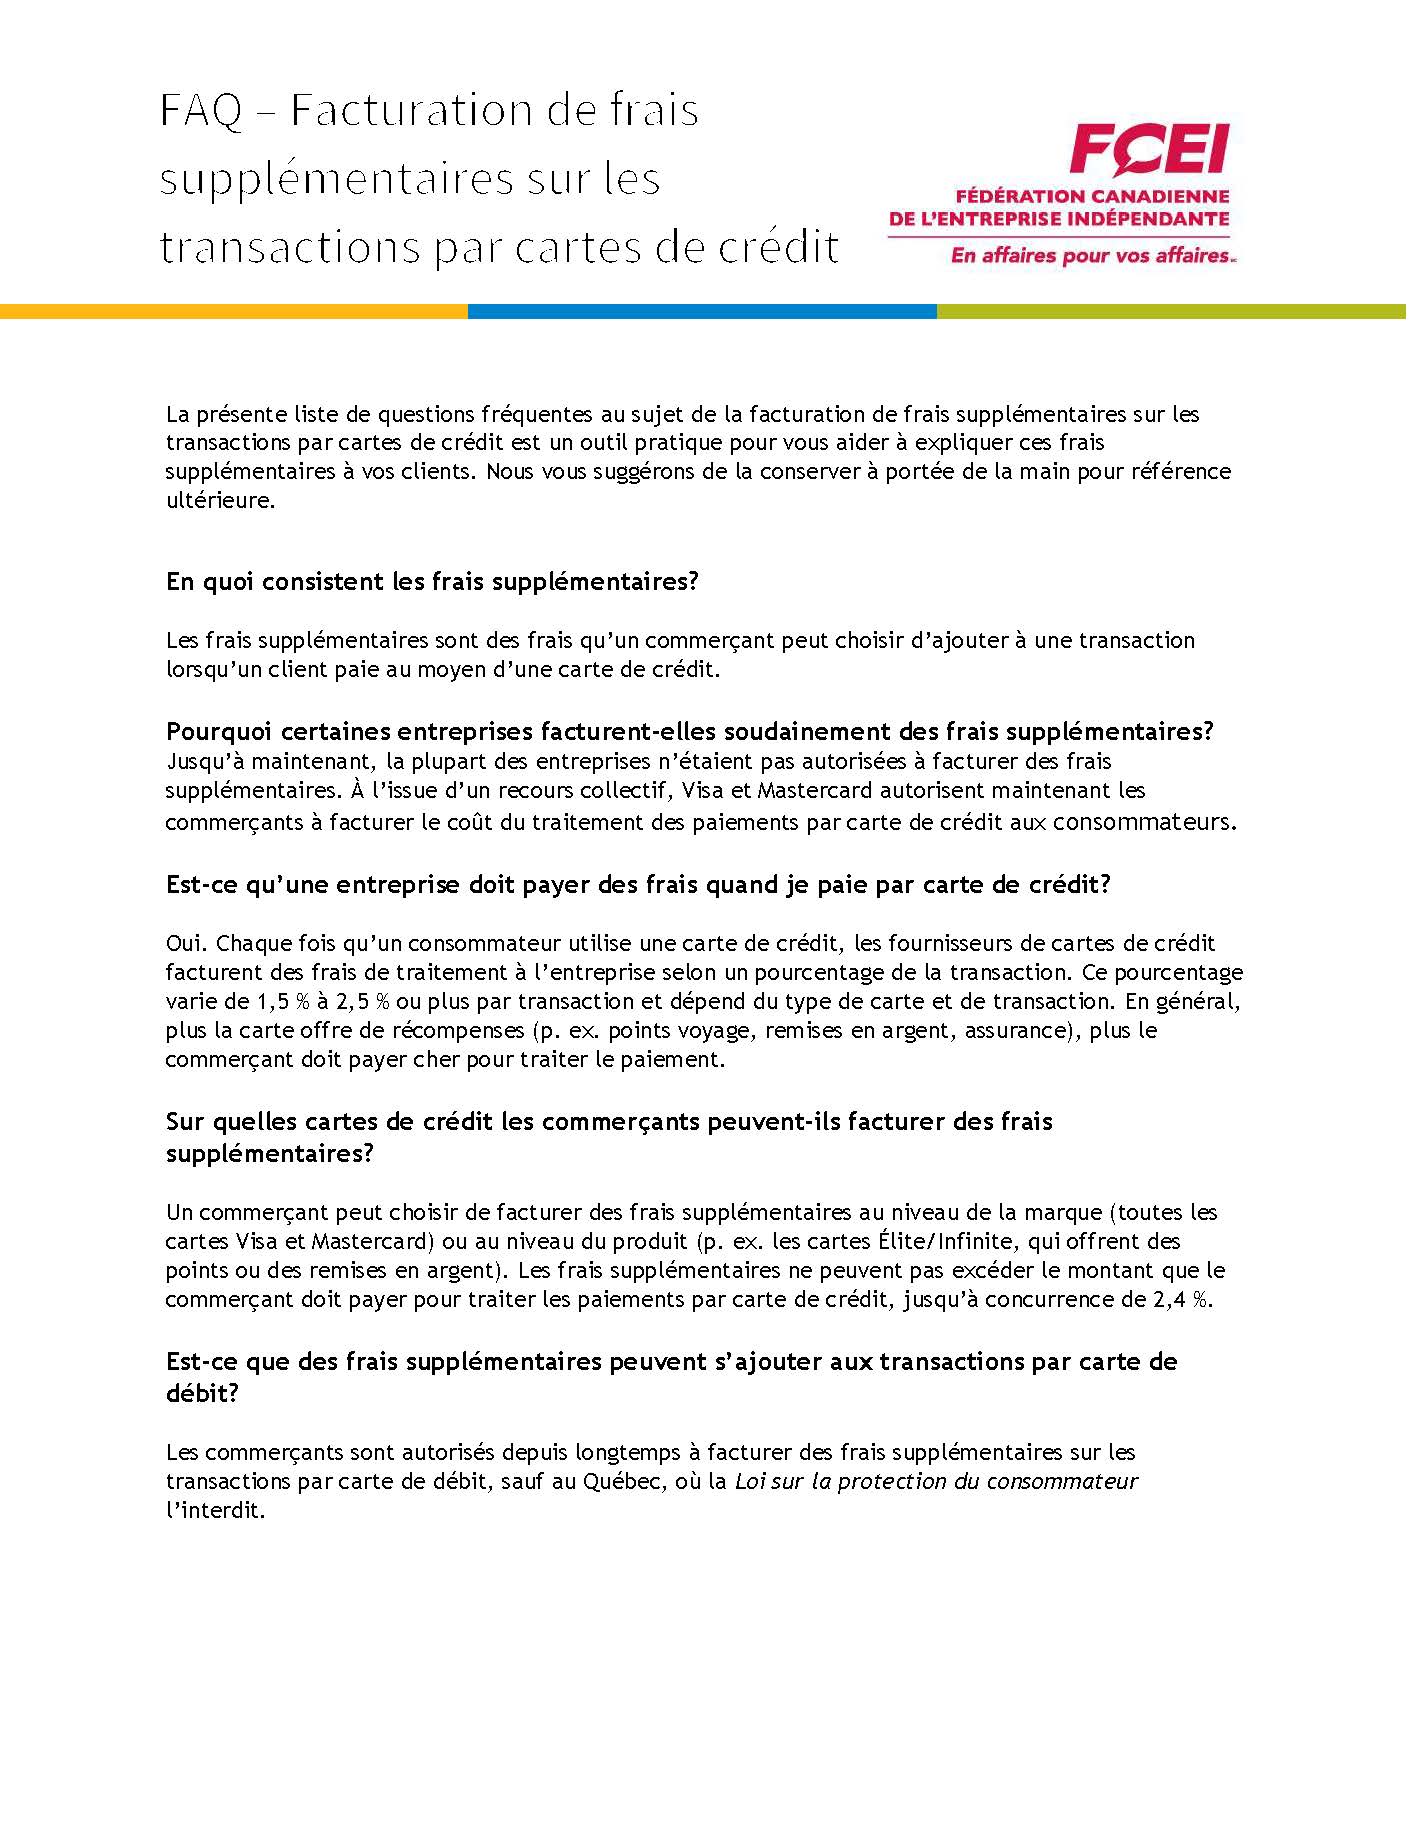 FAQ_Facturation_de_frais_supplementaires_sur_les_transactions_par_cartes_de_credit